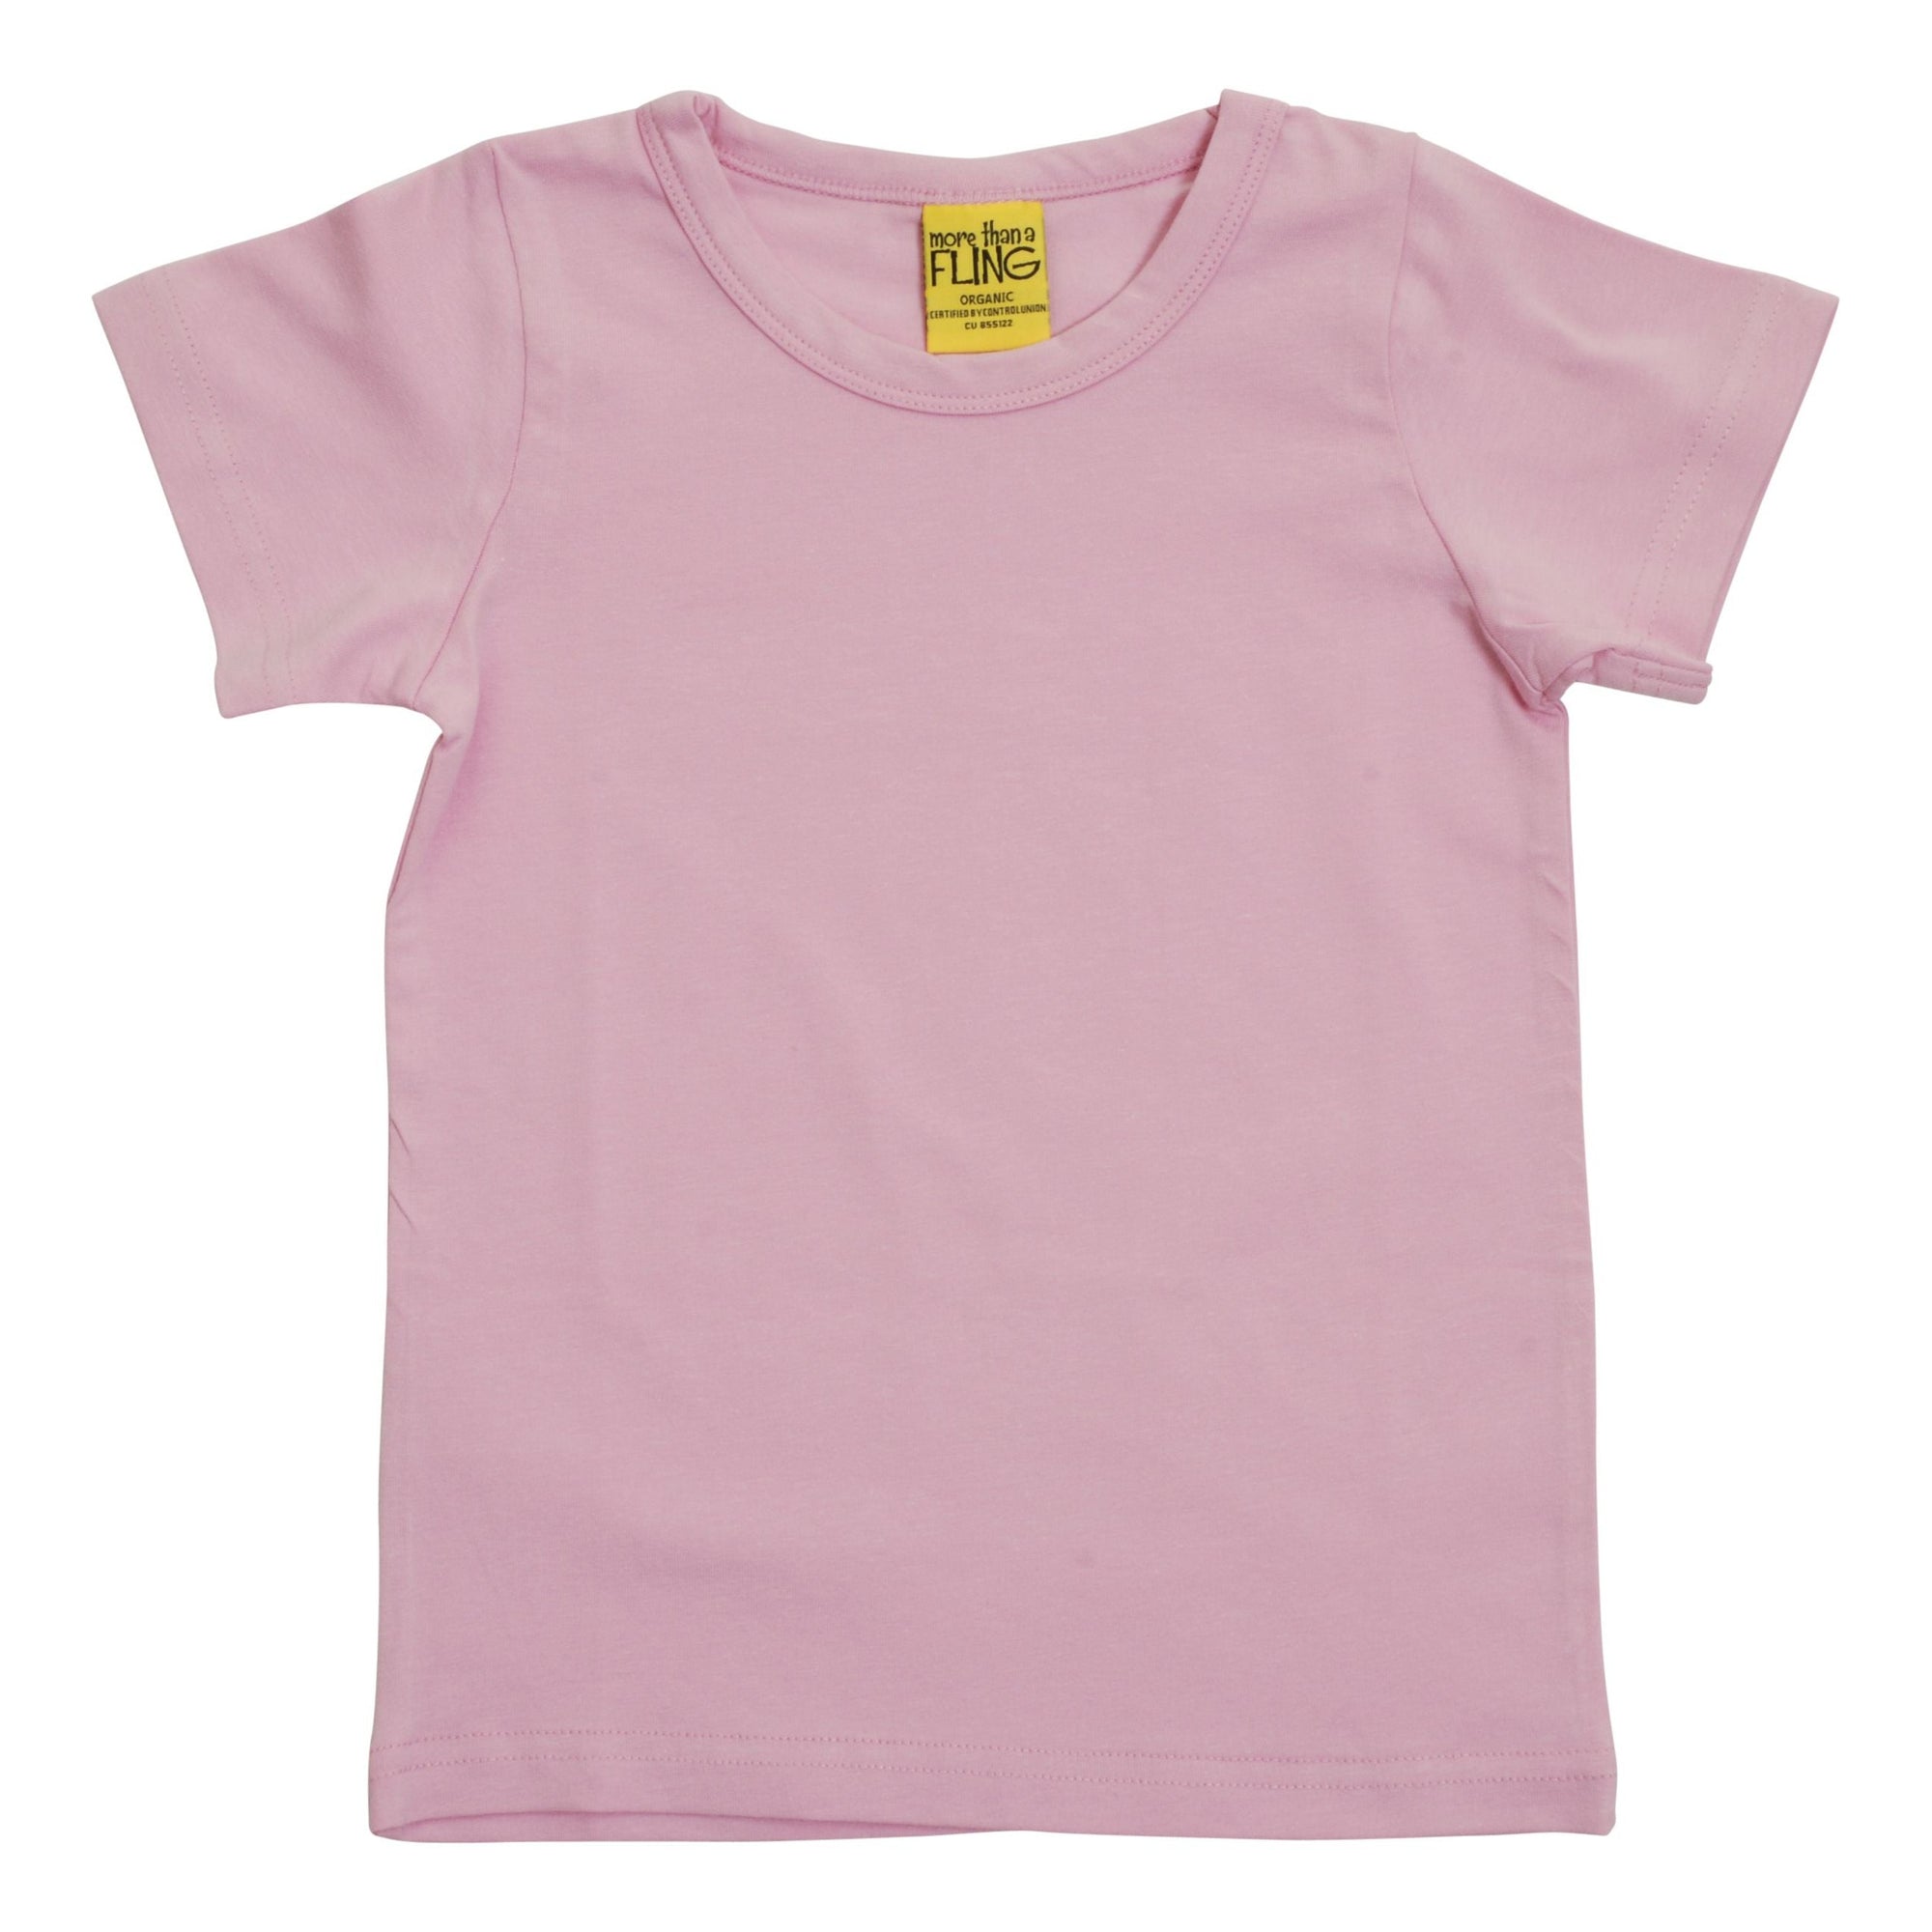 Orchid Pink Short Sleeve Shirt-More Than A Fling-Modern Rascals